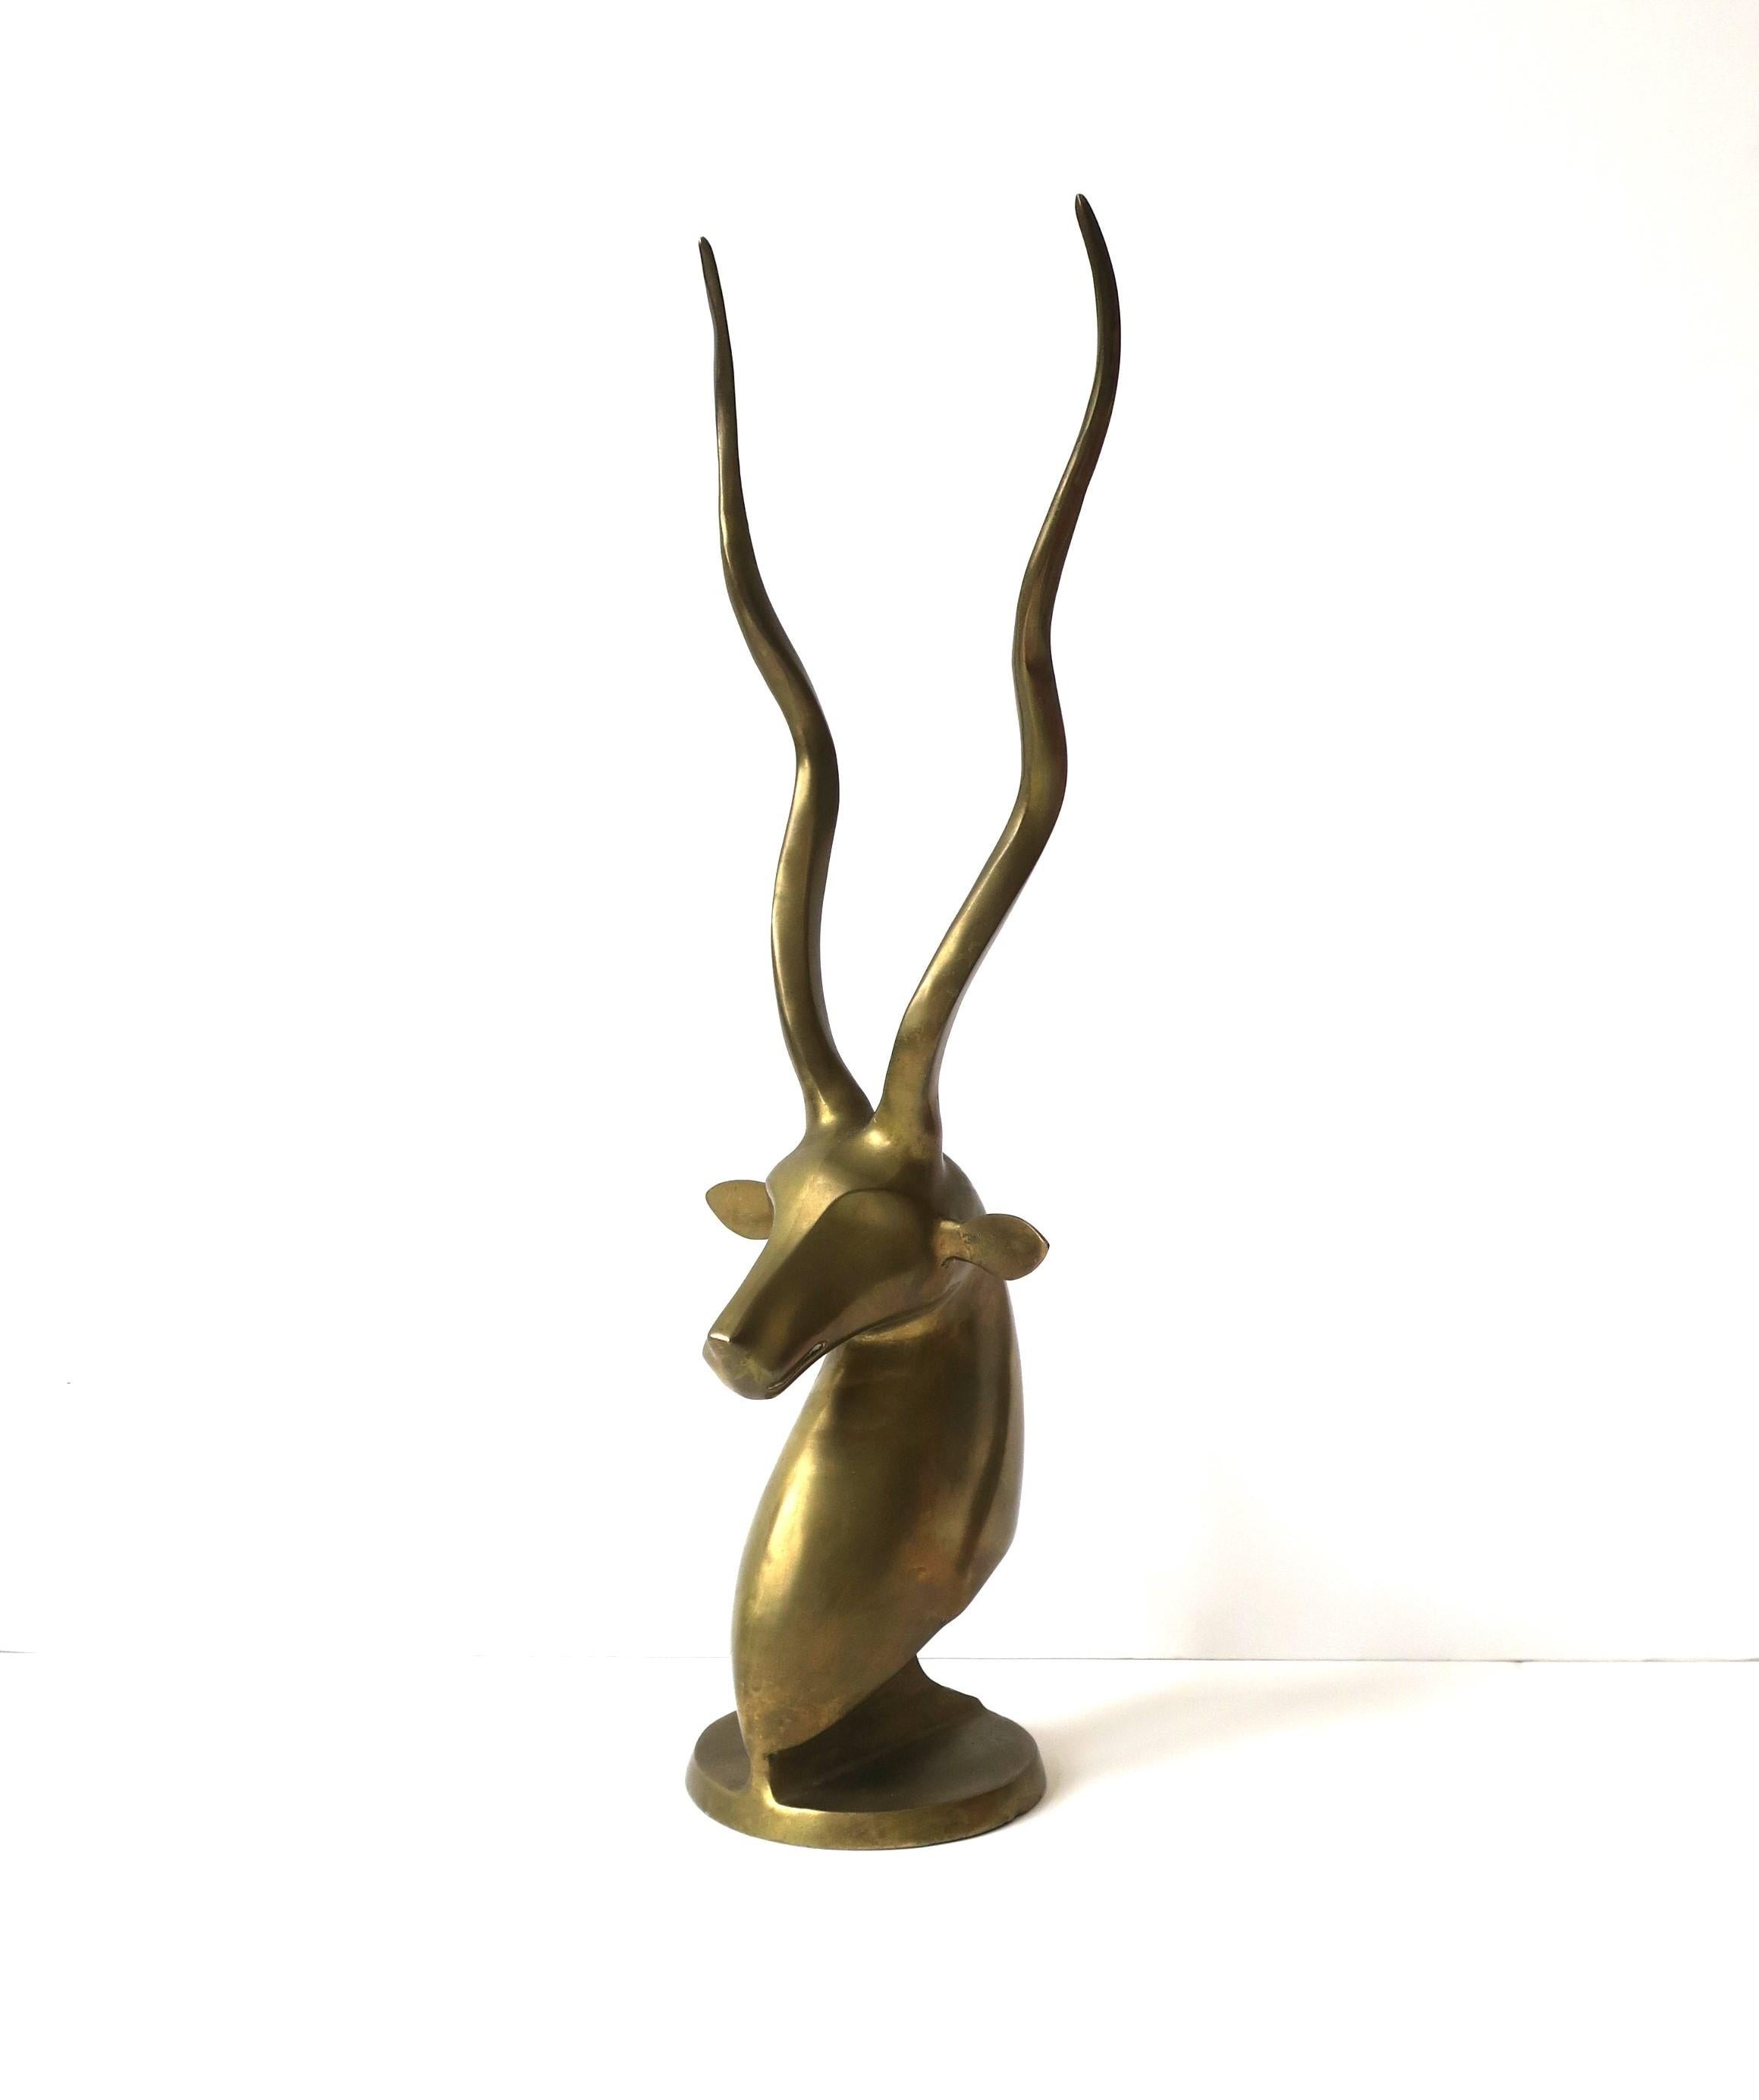 Un animal en laiton Gazelle antilope buste sculpture objet décoratif avec de grands bois, vers la fin du 20e siècle, 1970. 
 
Dimensions : 21.5